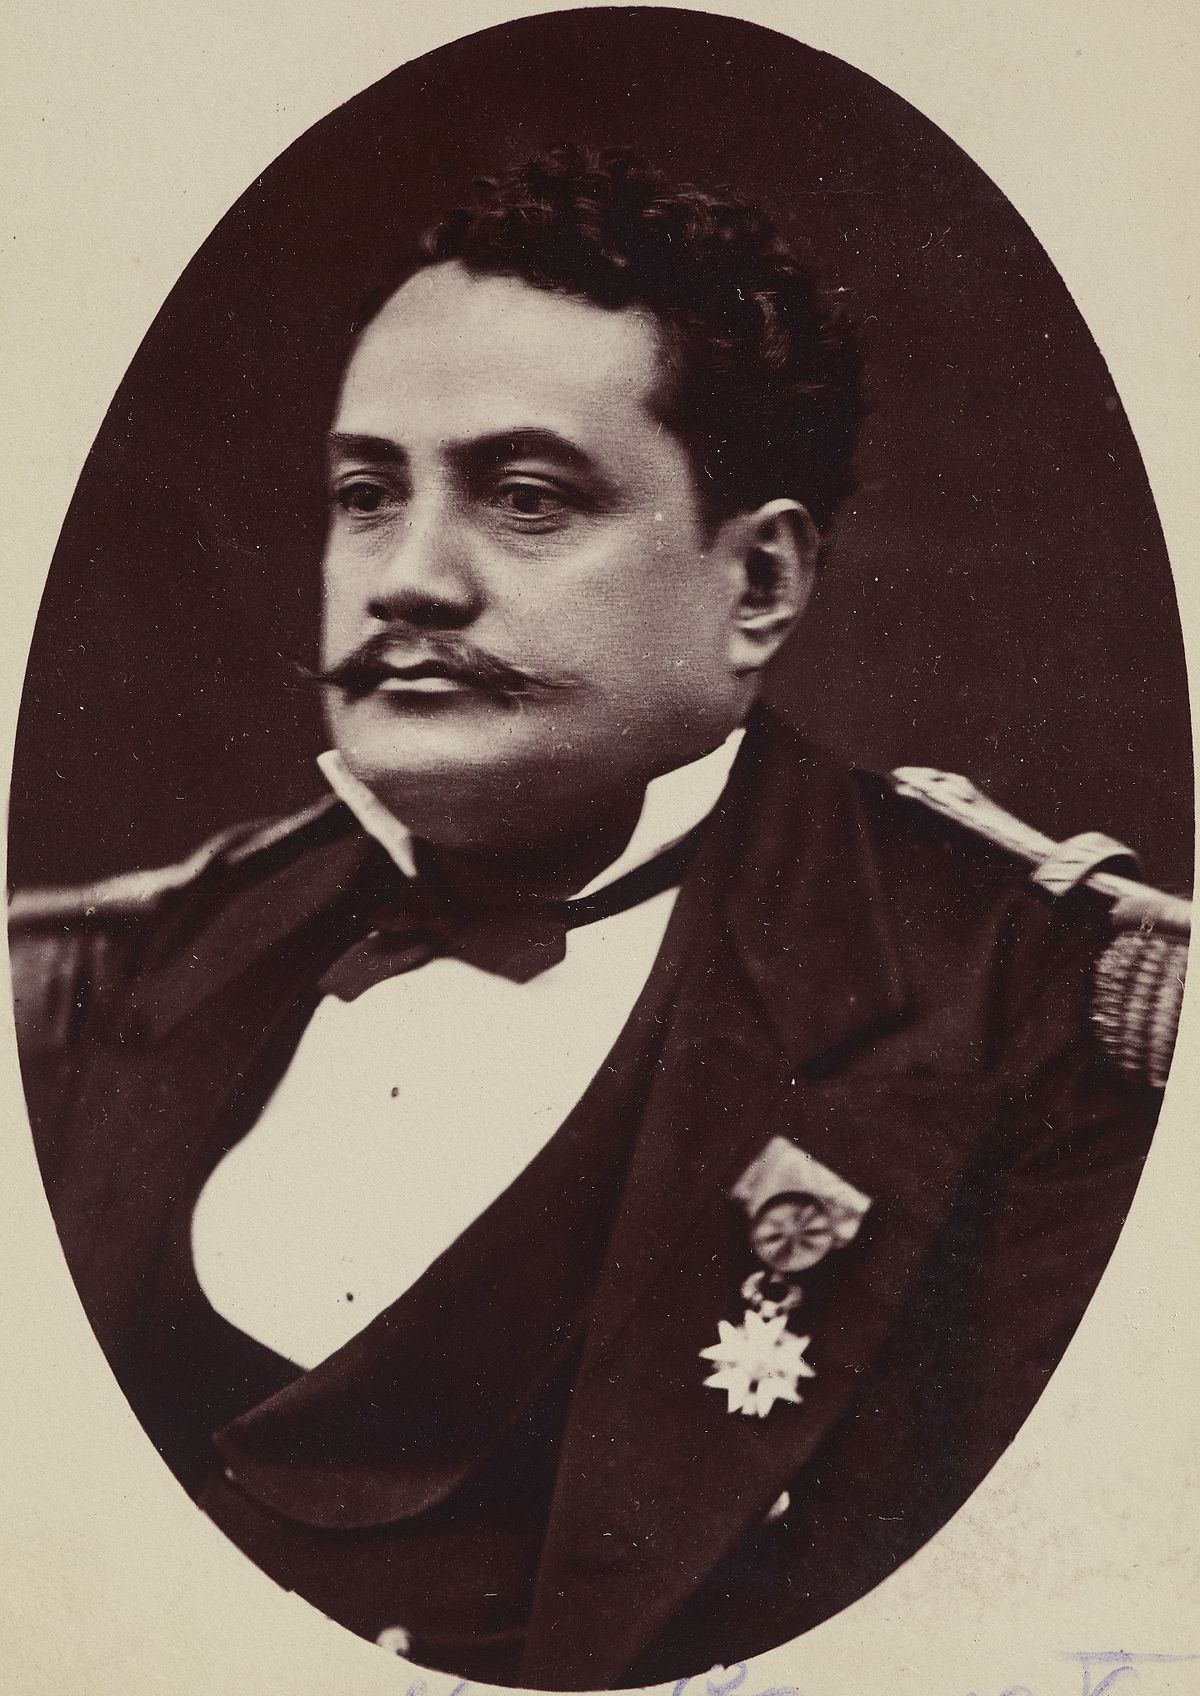 picture of tahiti's last king pomare v